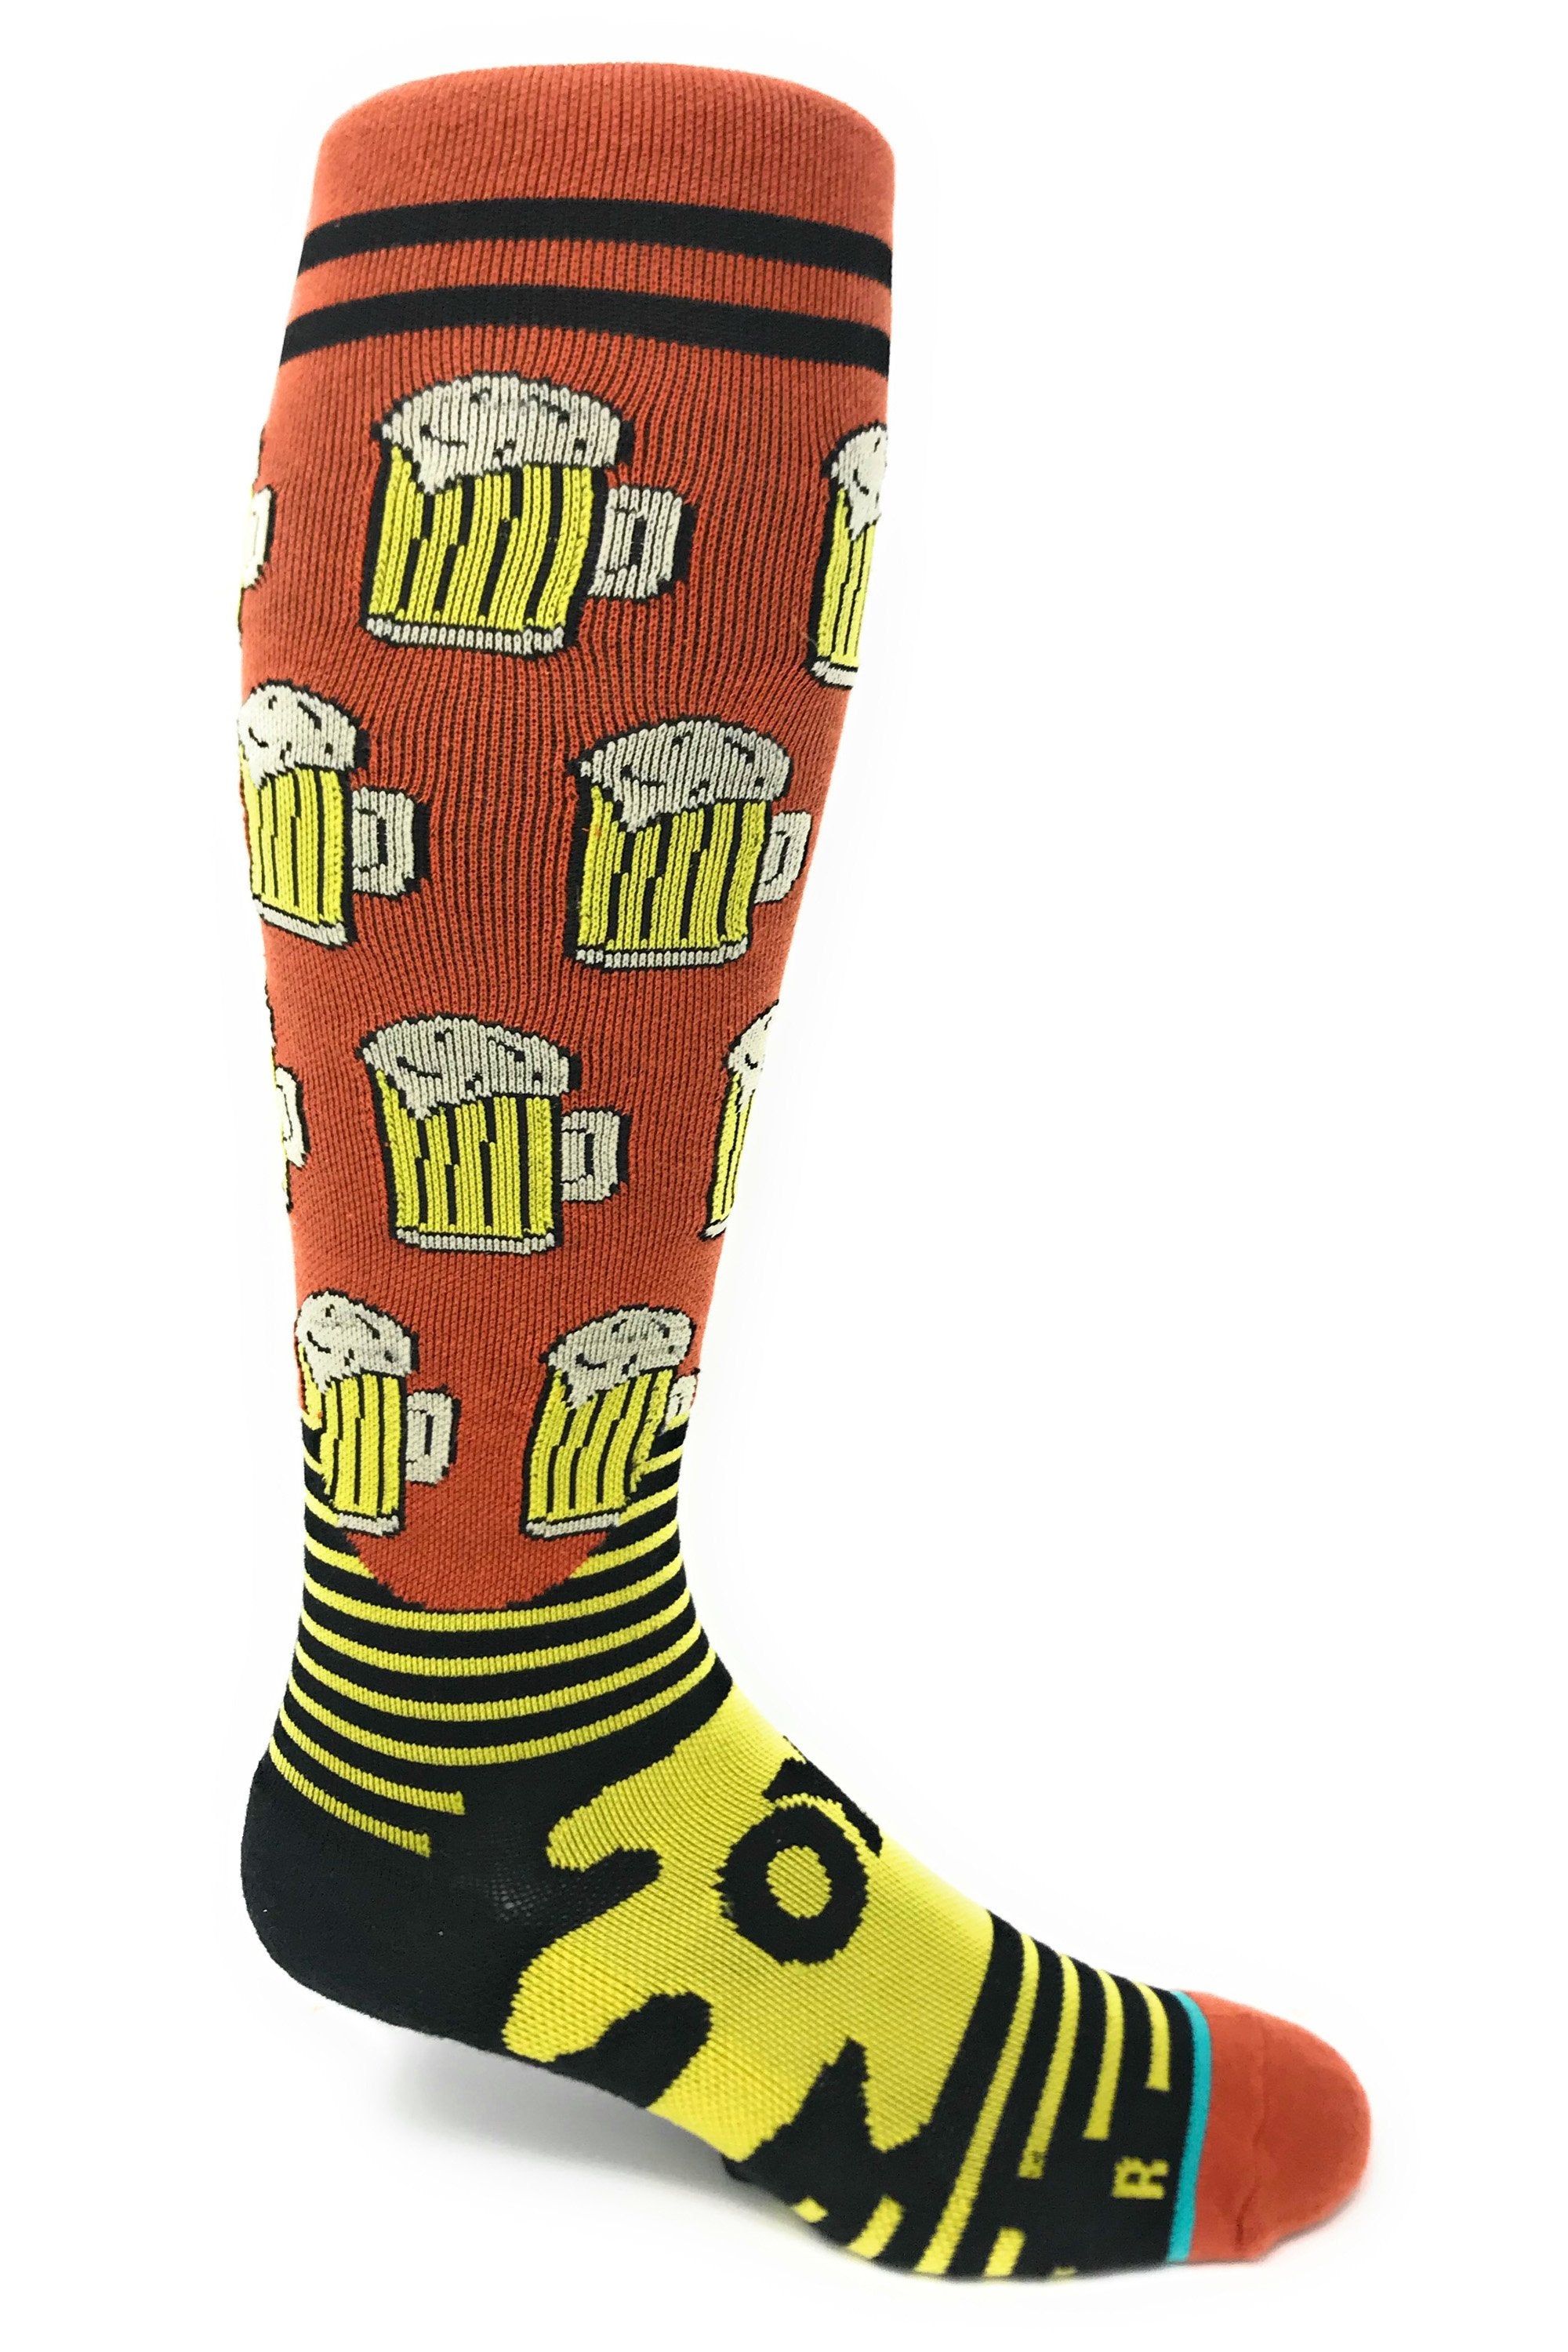 beer-me-unisex-compression-socks-2-oooh-yeah-socks